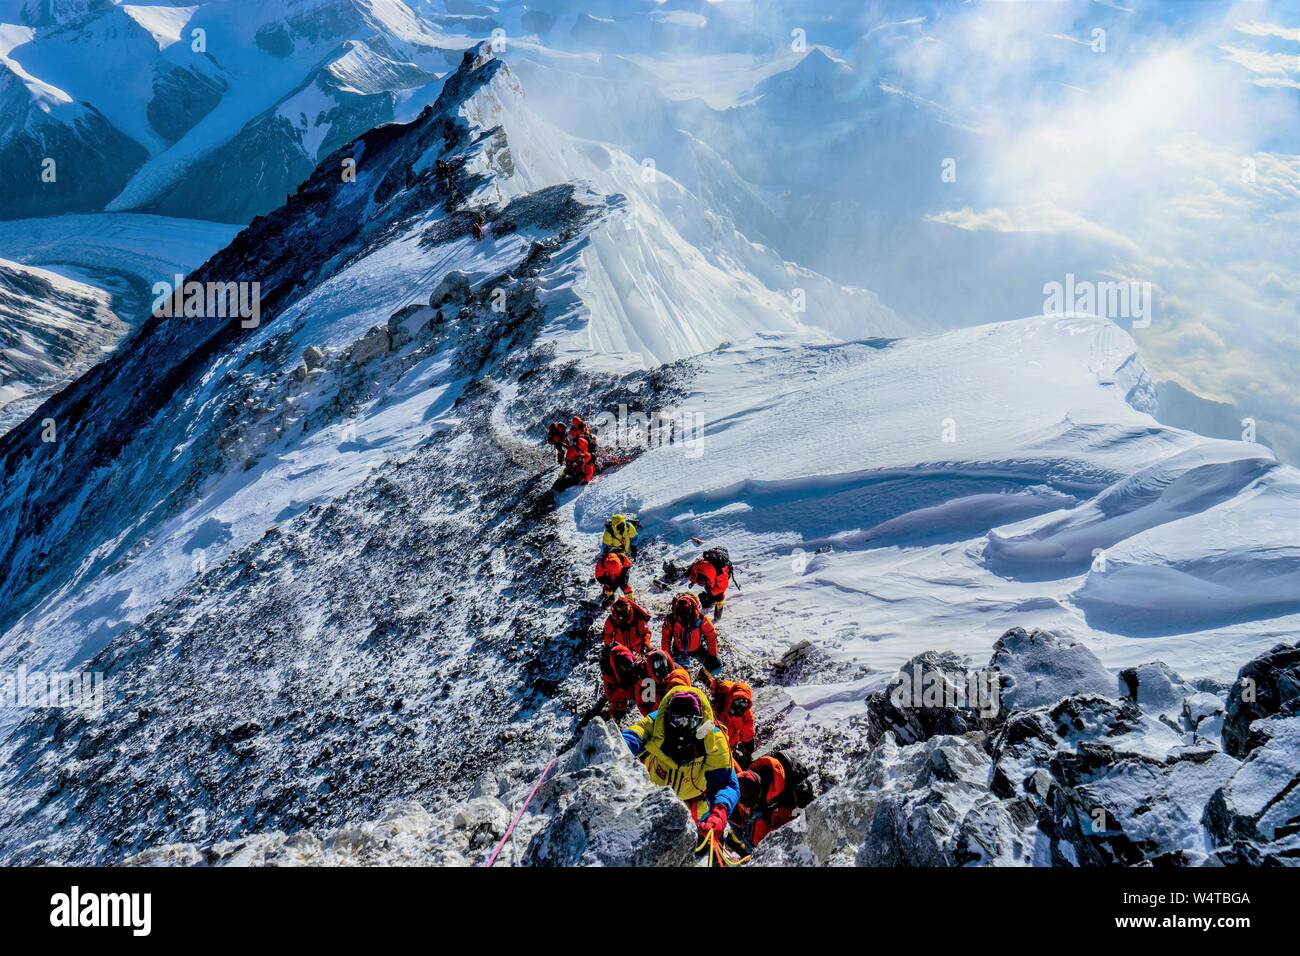 (190725) - LHASA, 25. Juli 2019 (Xinhua) - Foto am Mai 24, 2019 zeigt Bergführer Skalierung Mount Qomolangma im Südwesten Chinas Tibet autonomen Region. Tibet Himalaya Bergsteigen Leitfaden Schule feiert ihr 20-jähriges Jubiläum in Lhasa, der Hauptstadt von Südwesten Chinas Tibet autonomen Region, am 12. Juli 2019. Gegründet 1999, Tibet Himalaya Bergsteigen Guide School, der ersten professionellen Bergsteigen Training Schule in China, hat rund 300 Absolventen der high-altitude Guides, Küchenpersonal, Fotografen, Sportler und Übersetzer geschult. Da die Glückwunschschreiben aus dem C Stockfoto